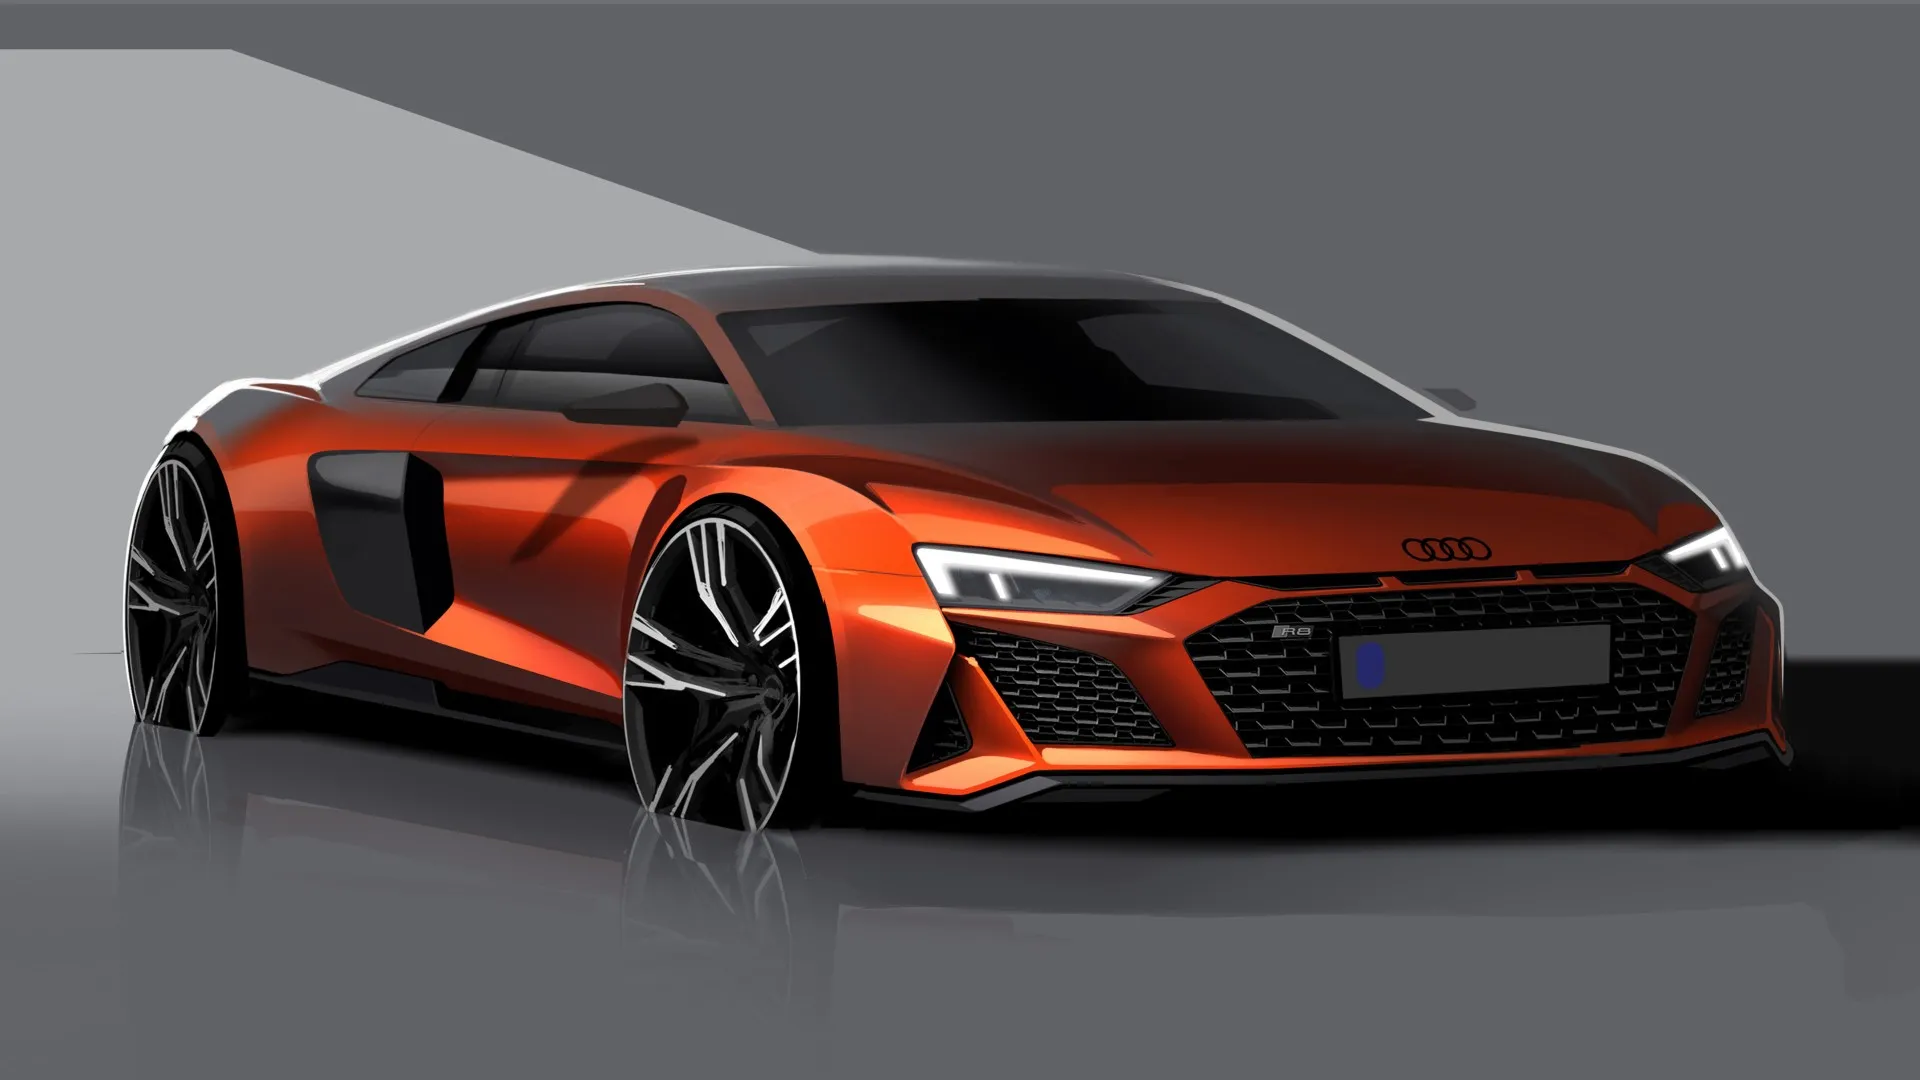 ¿Qué podemos esperar del próximo Audi R8?